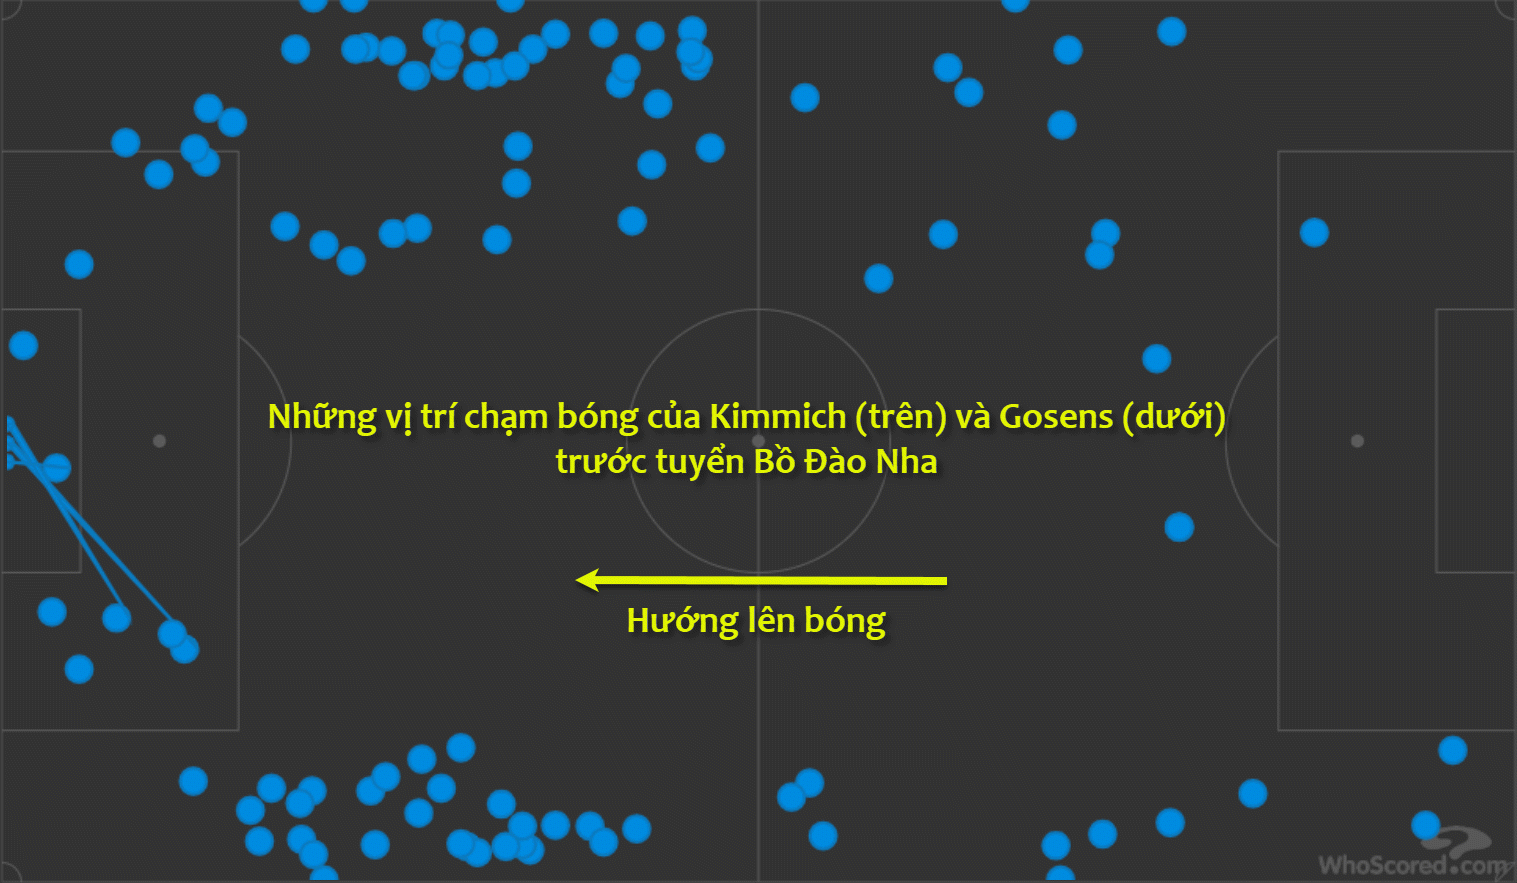 Trước Bồ Đào Nha, tần suất chạm bóng của Gosens và Kimmich chủ yếu là trên phần sân đối thủ